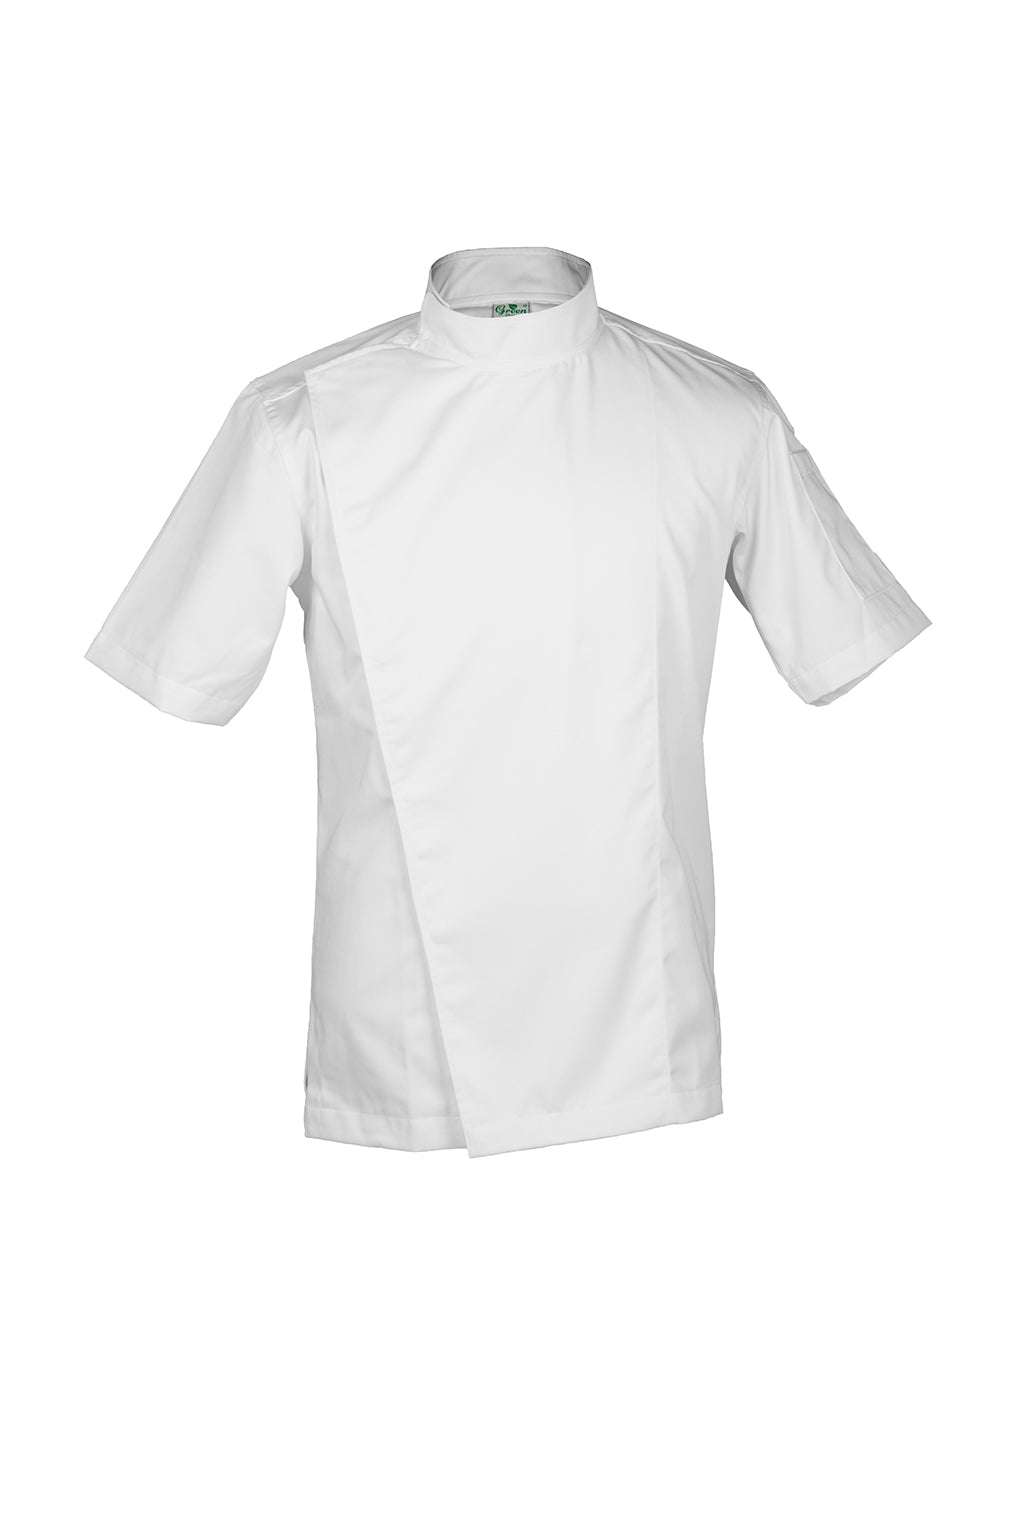 Cobe White, Short Sleeve chef jacket